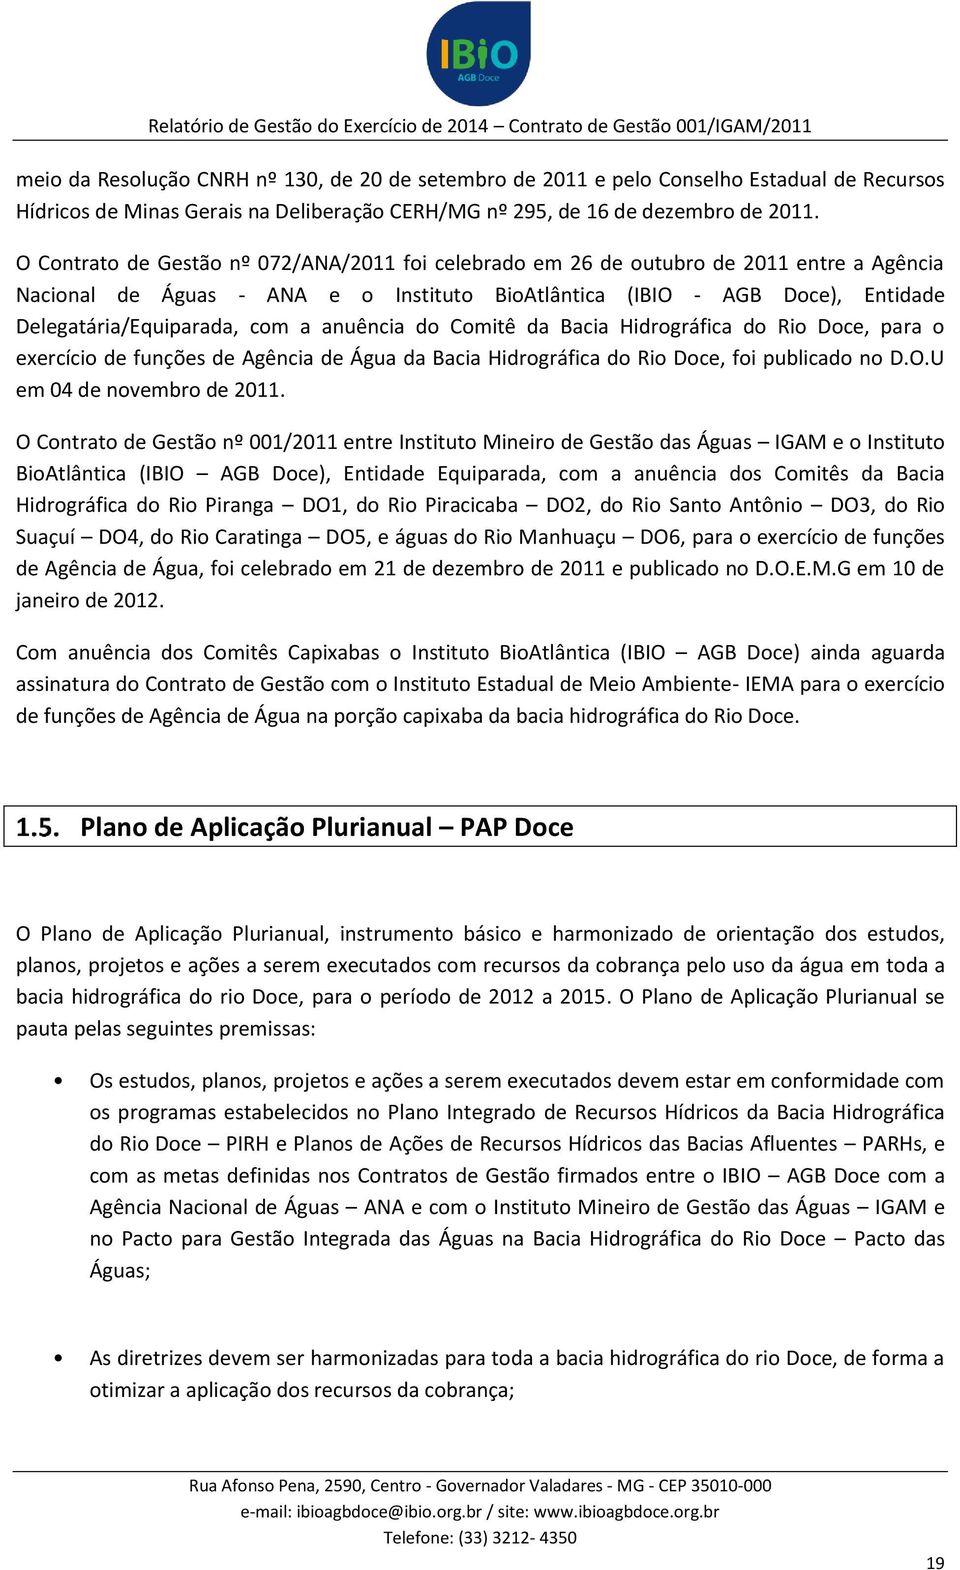 a anuência do Comitê da Bacia Hidrográfica do Rio Doce, para o exercício de funções de Agência de Água da Bacia Hidrográfica do Rio Doce, foi publicado no D.O.U em 04 de novembro de 2011.